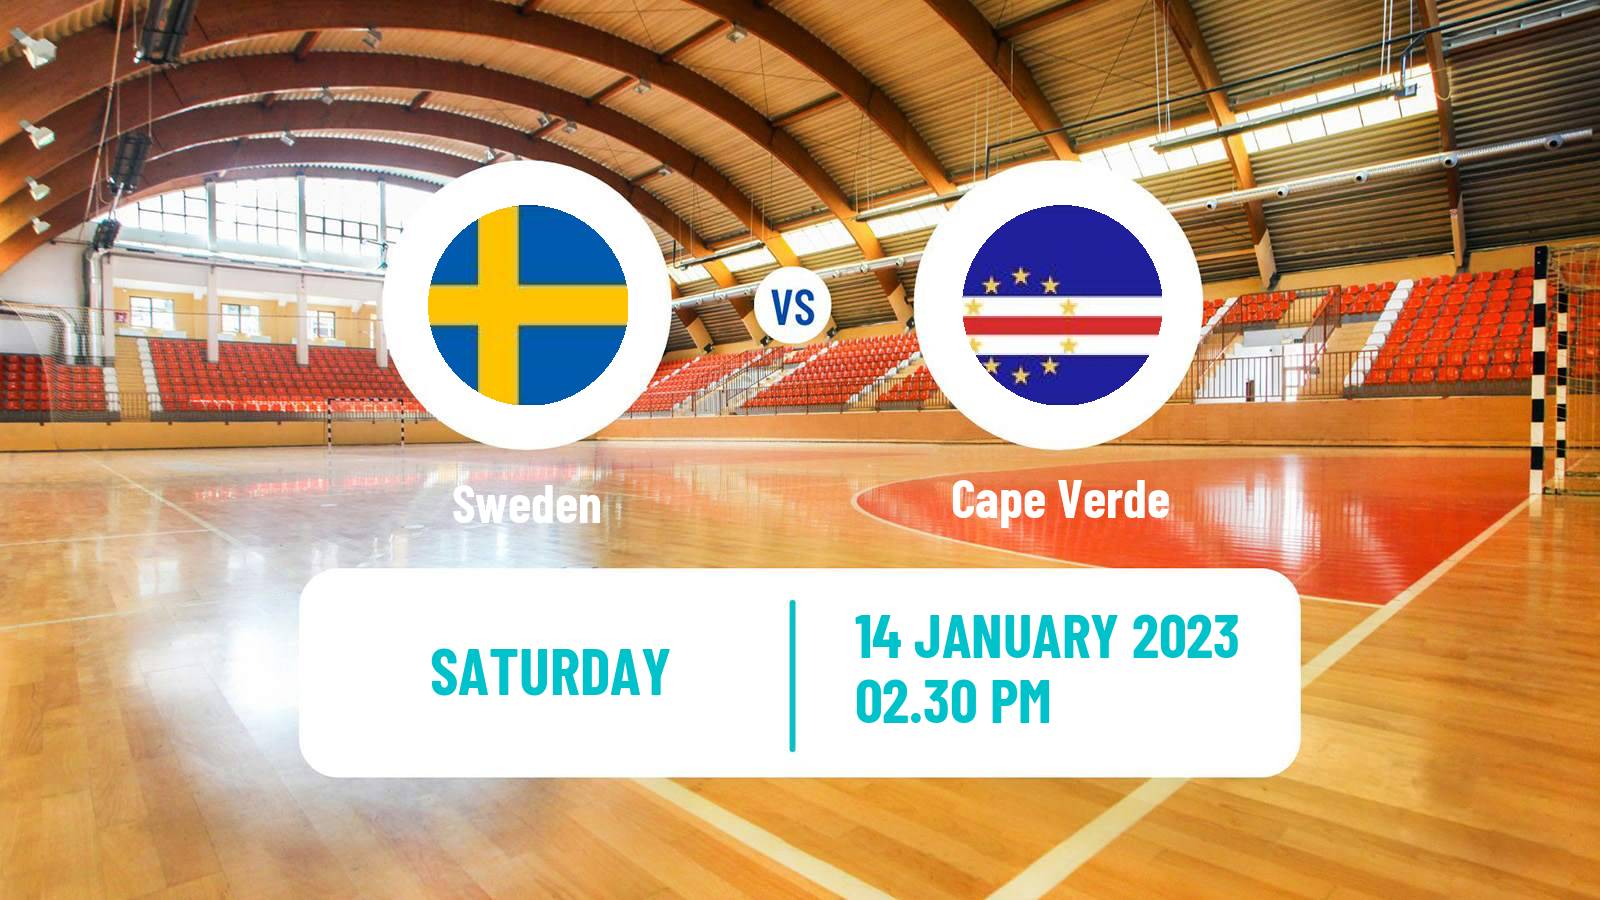 Handball Handball World Championship Sweden - Cape Verde